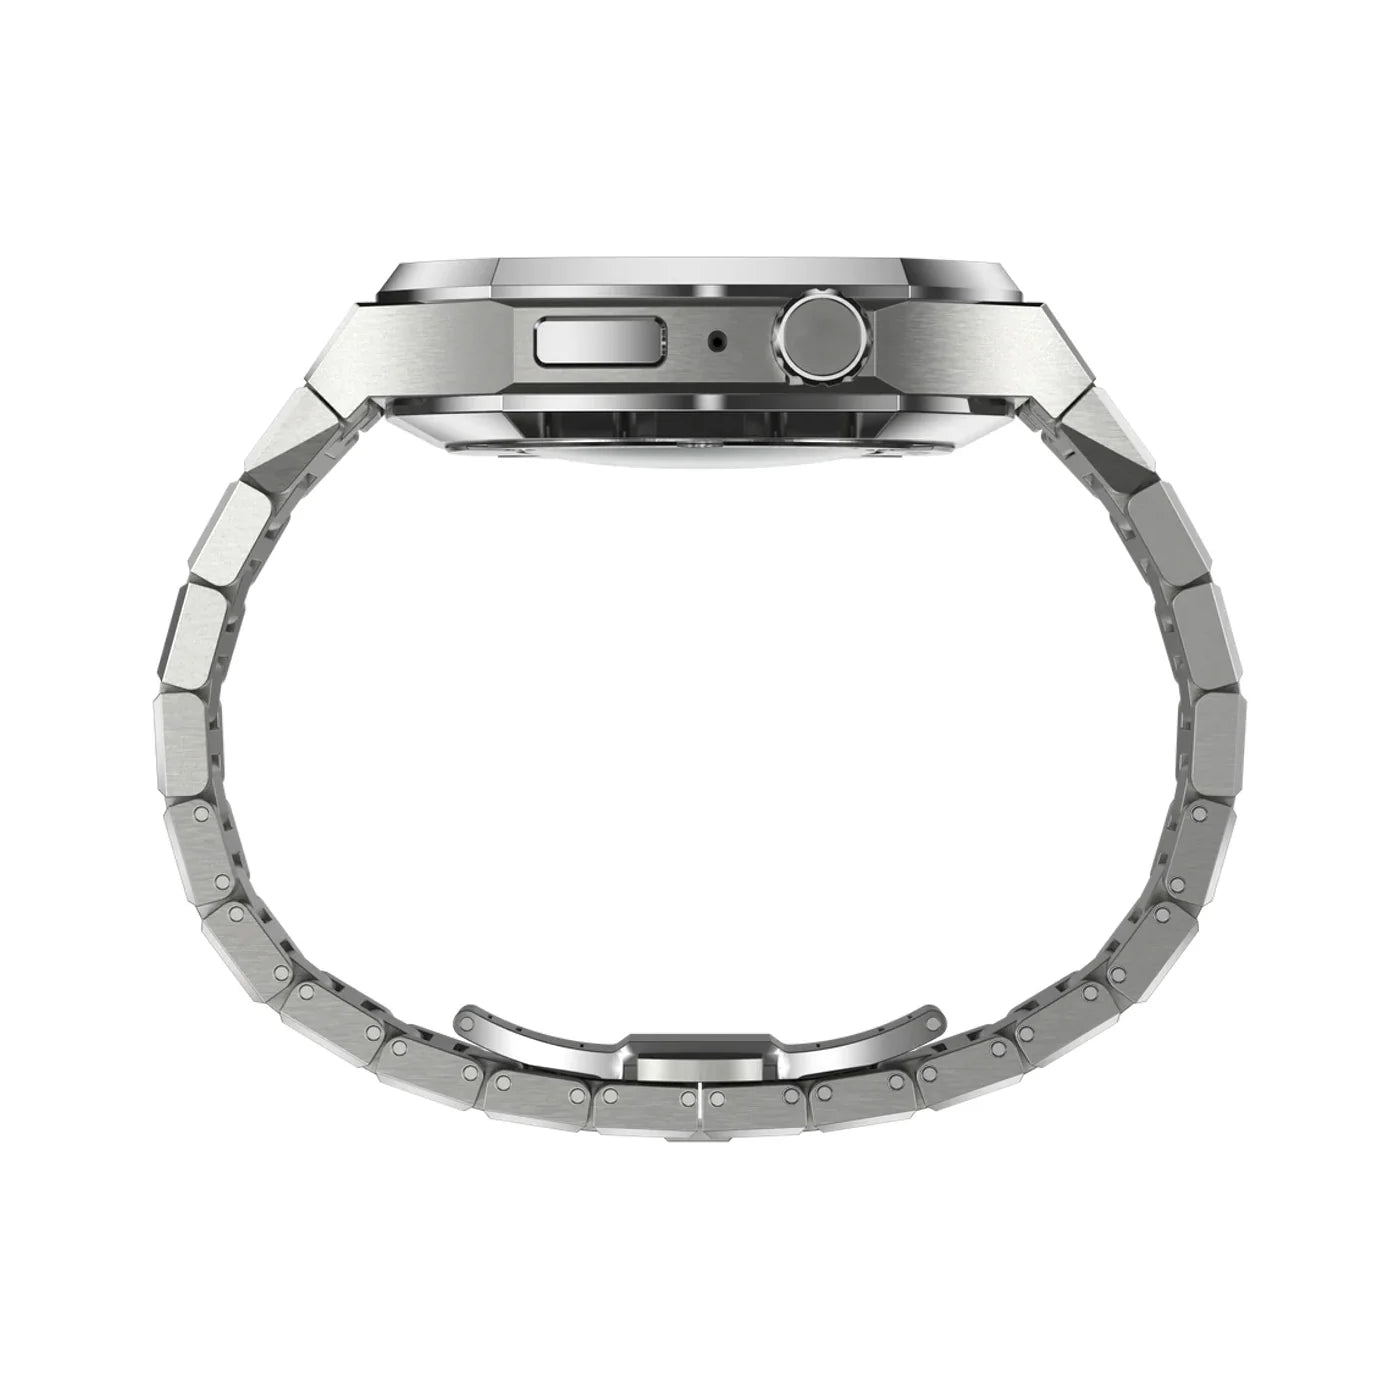 Custom Apple Watch Band X Phone Case by yours truly @bigacustom 🤎 🖤 Love  Big Dawg • • • • #louisvuitton #lv #gucci #chanel #fashion…